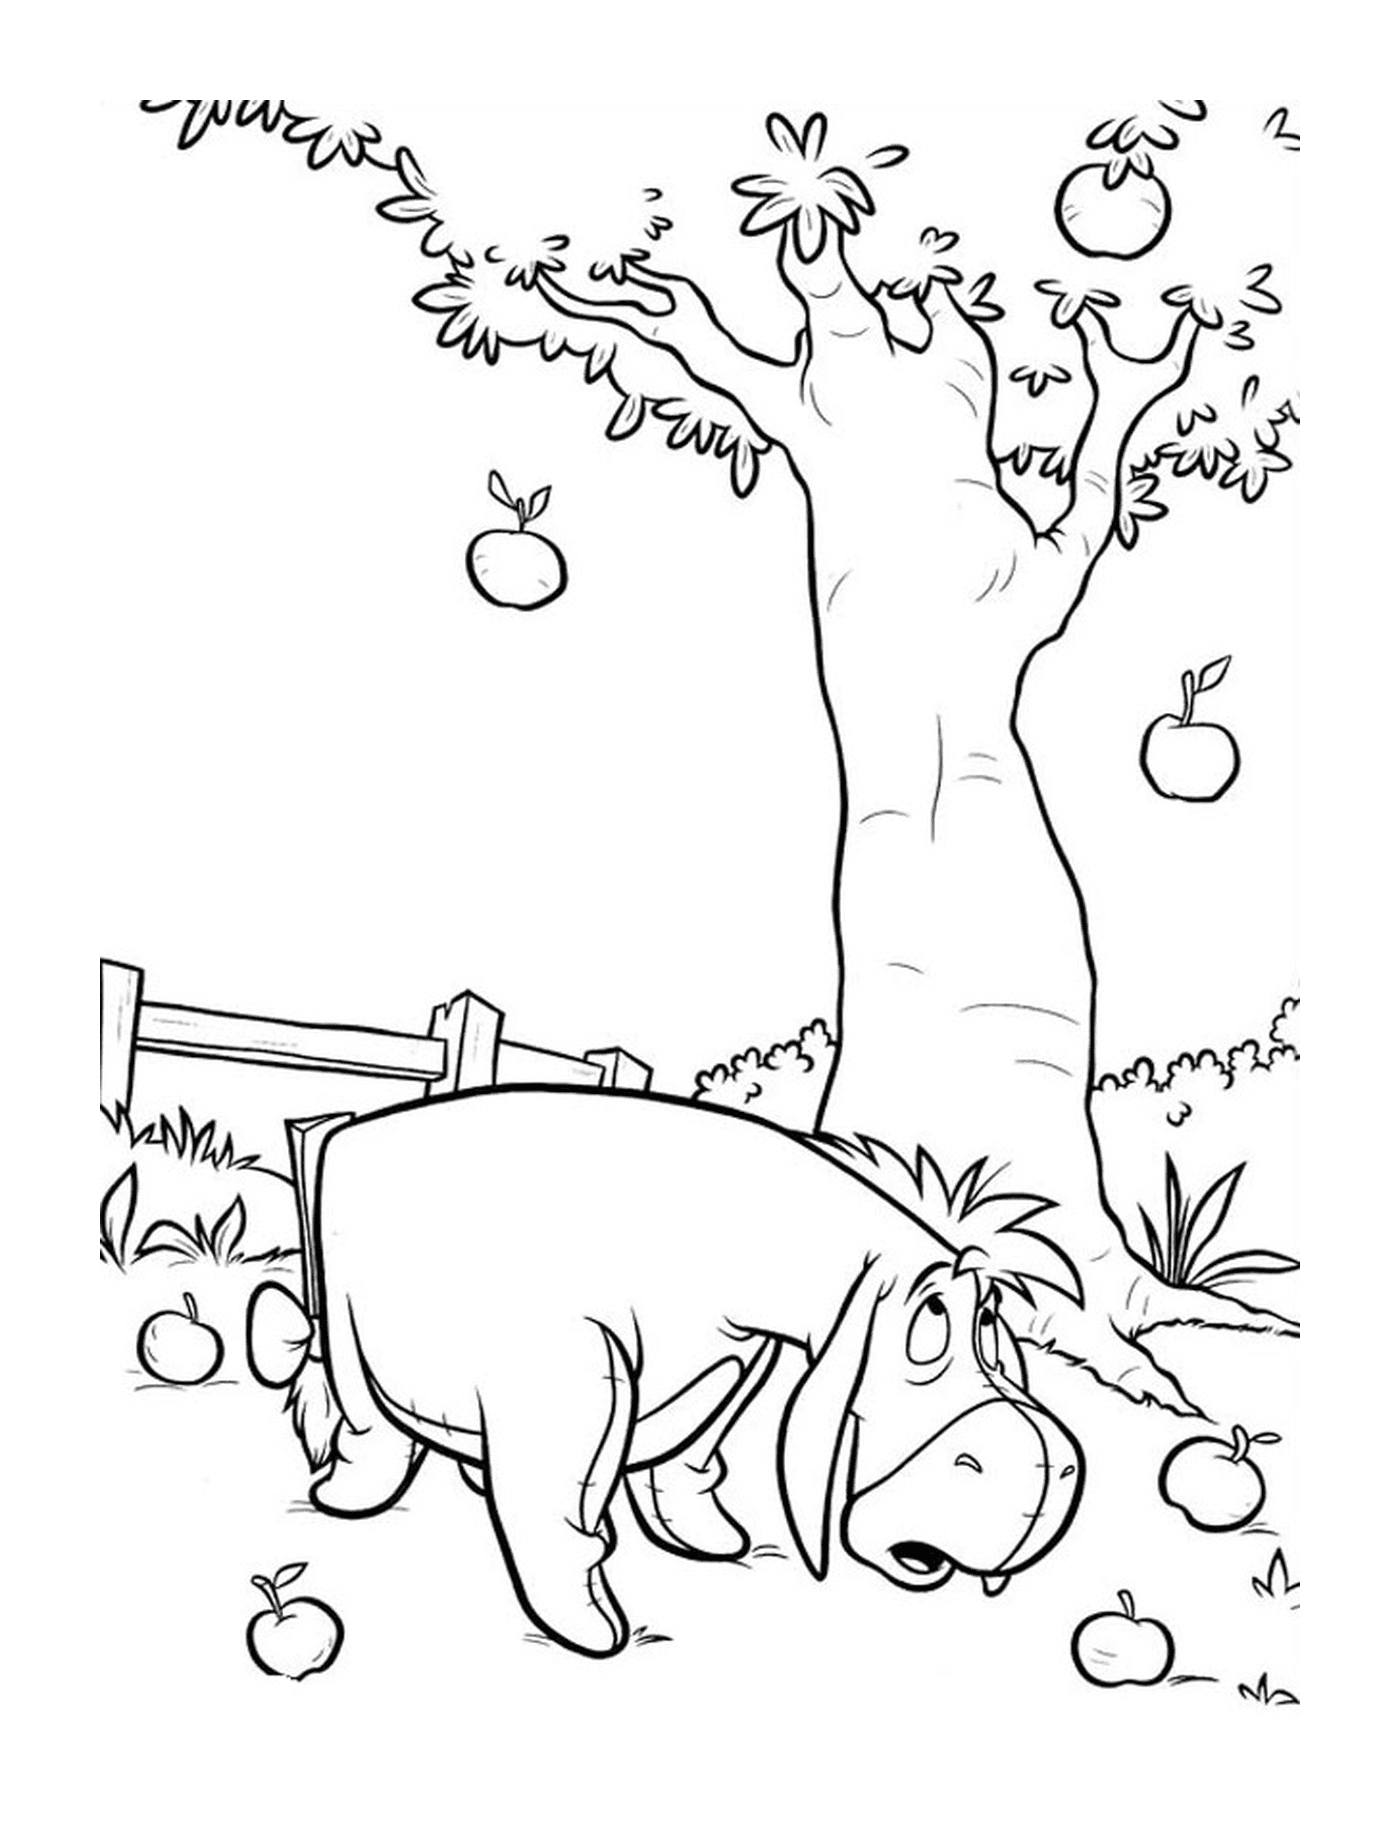   Un hippopotame debout à côté d'un pommier 